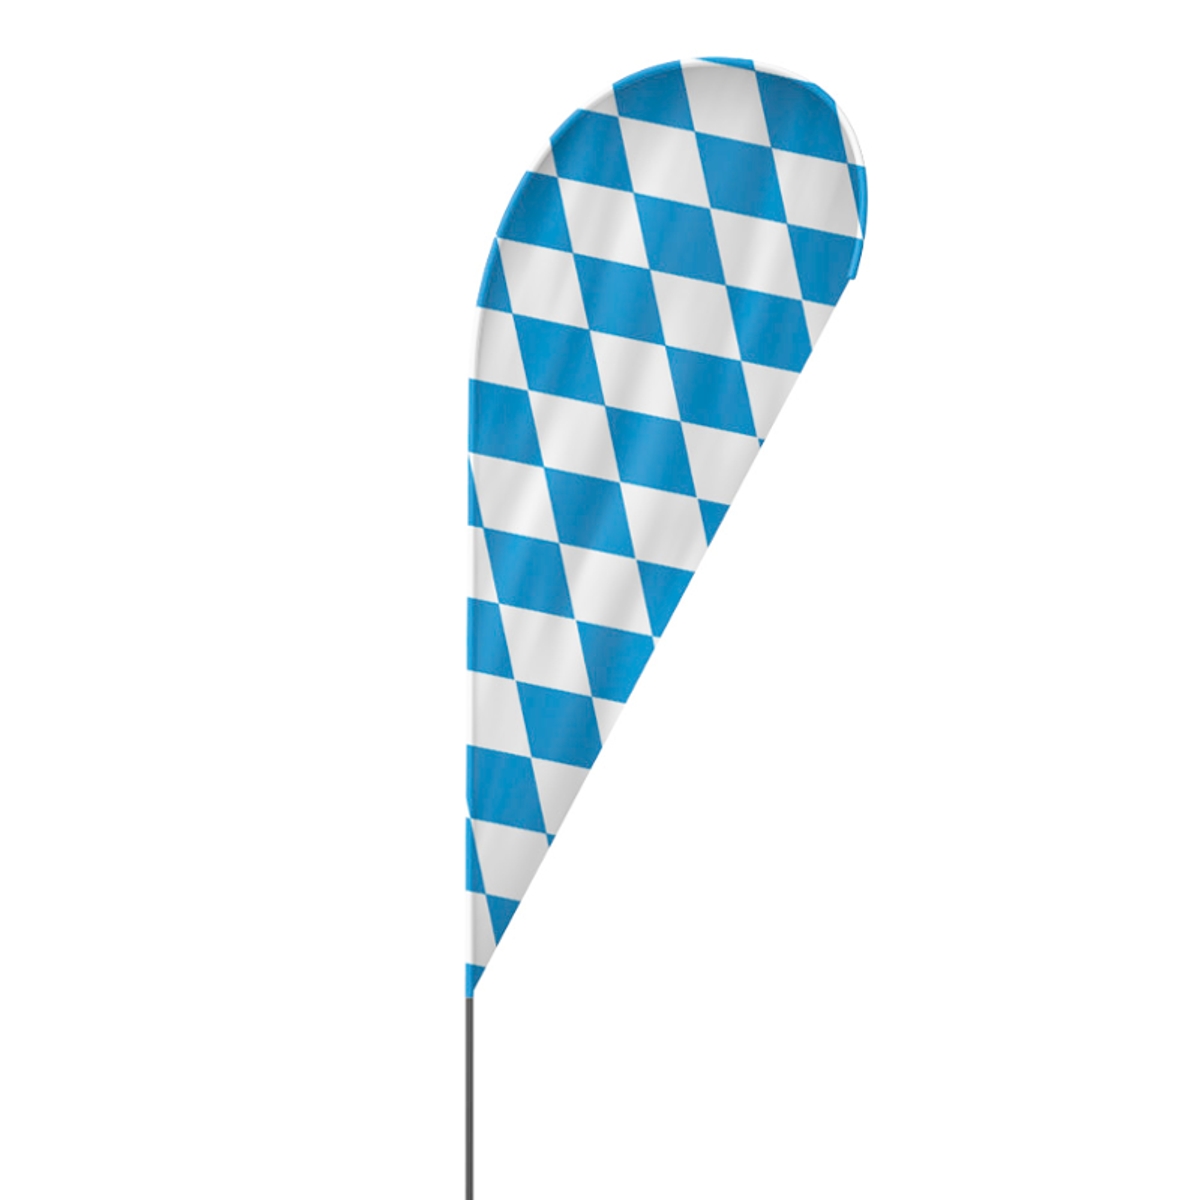 Drop | Oktoberfest Beachflag, blau weiß, verschiedene Größen, V1